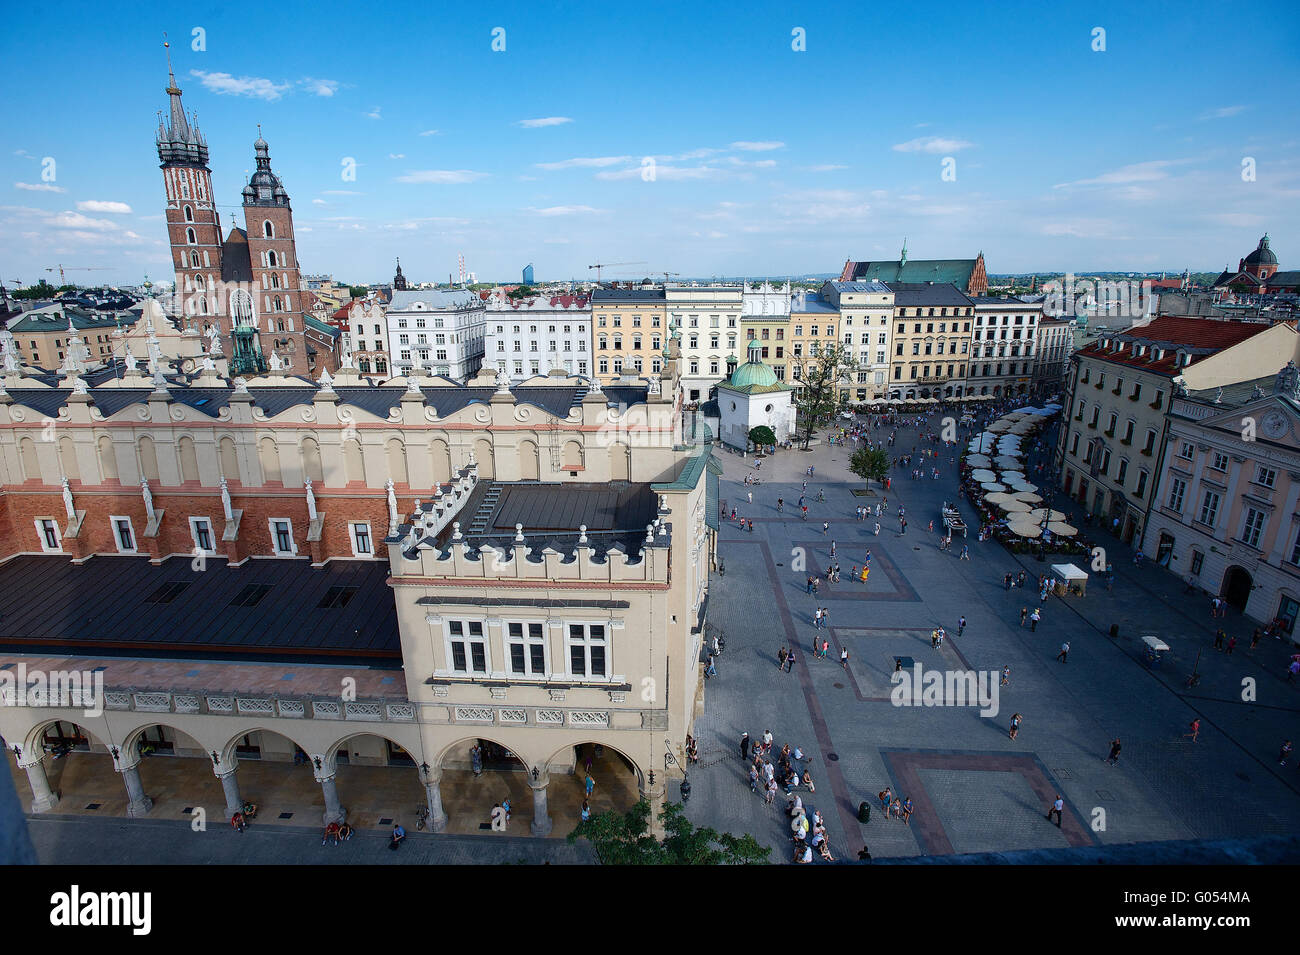 Place du marché principale de Cracovie Pologne avec St.Mary's Banque D'Images